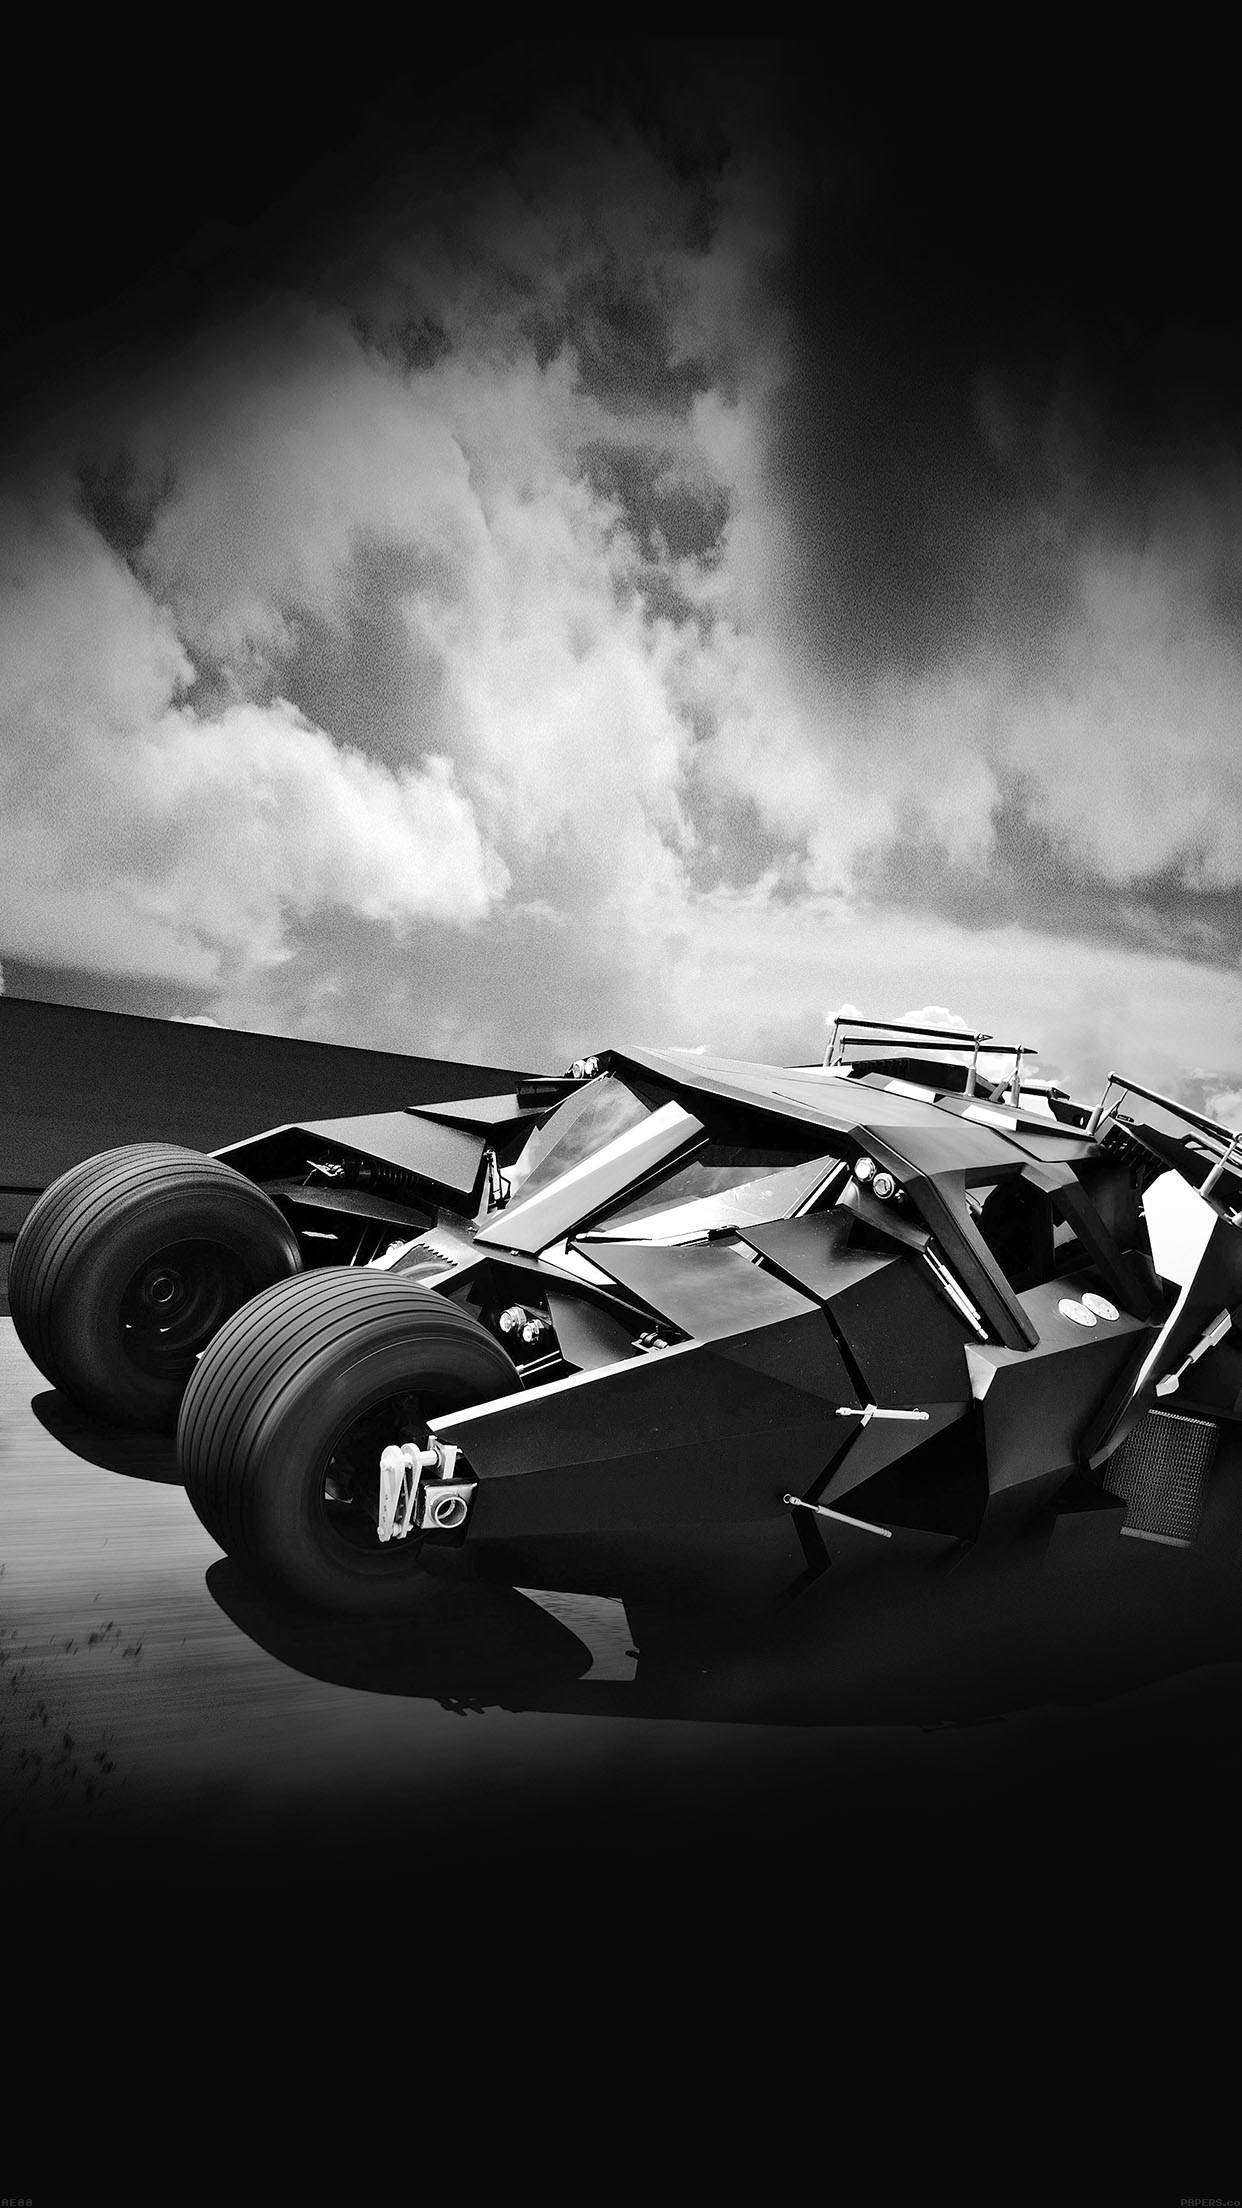 batman wallpaper for iphone 6,automotive design,black,vehicle,car,race car